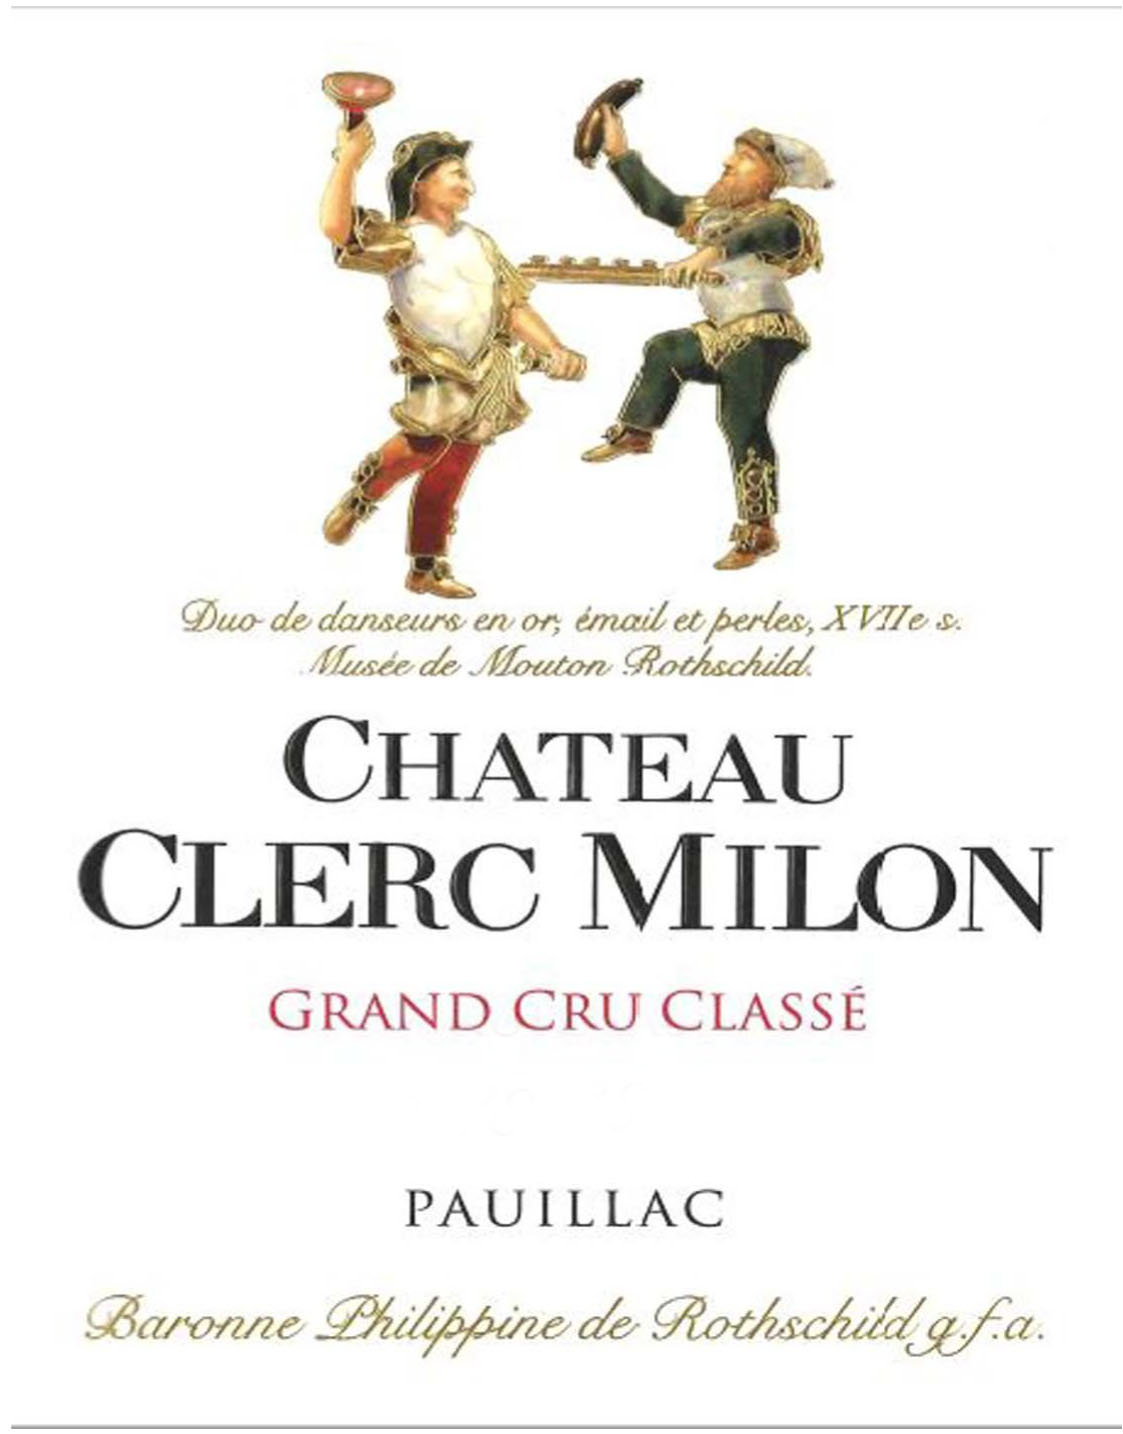 Chateau Clerc Milon label